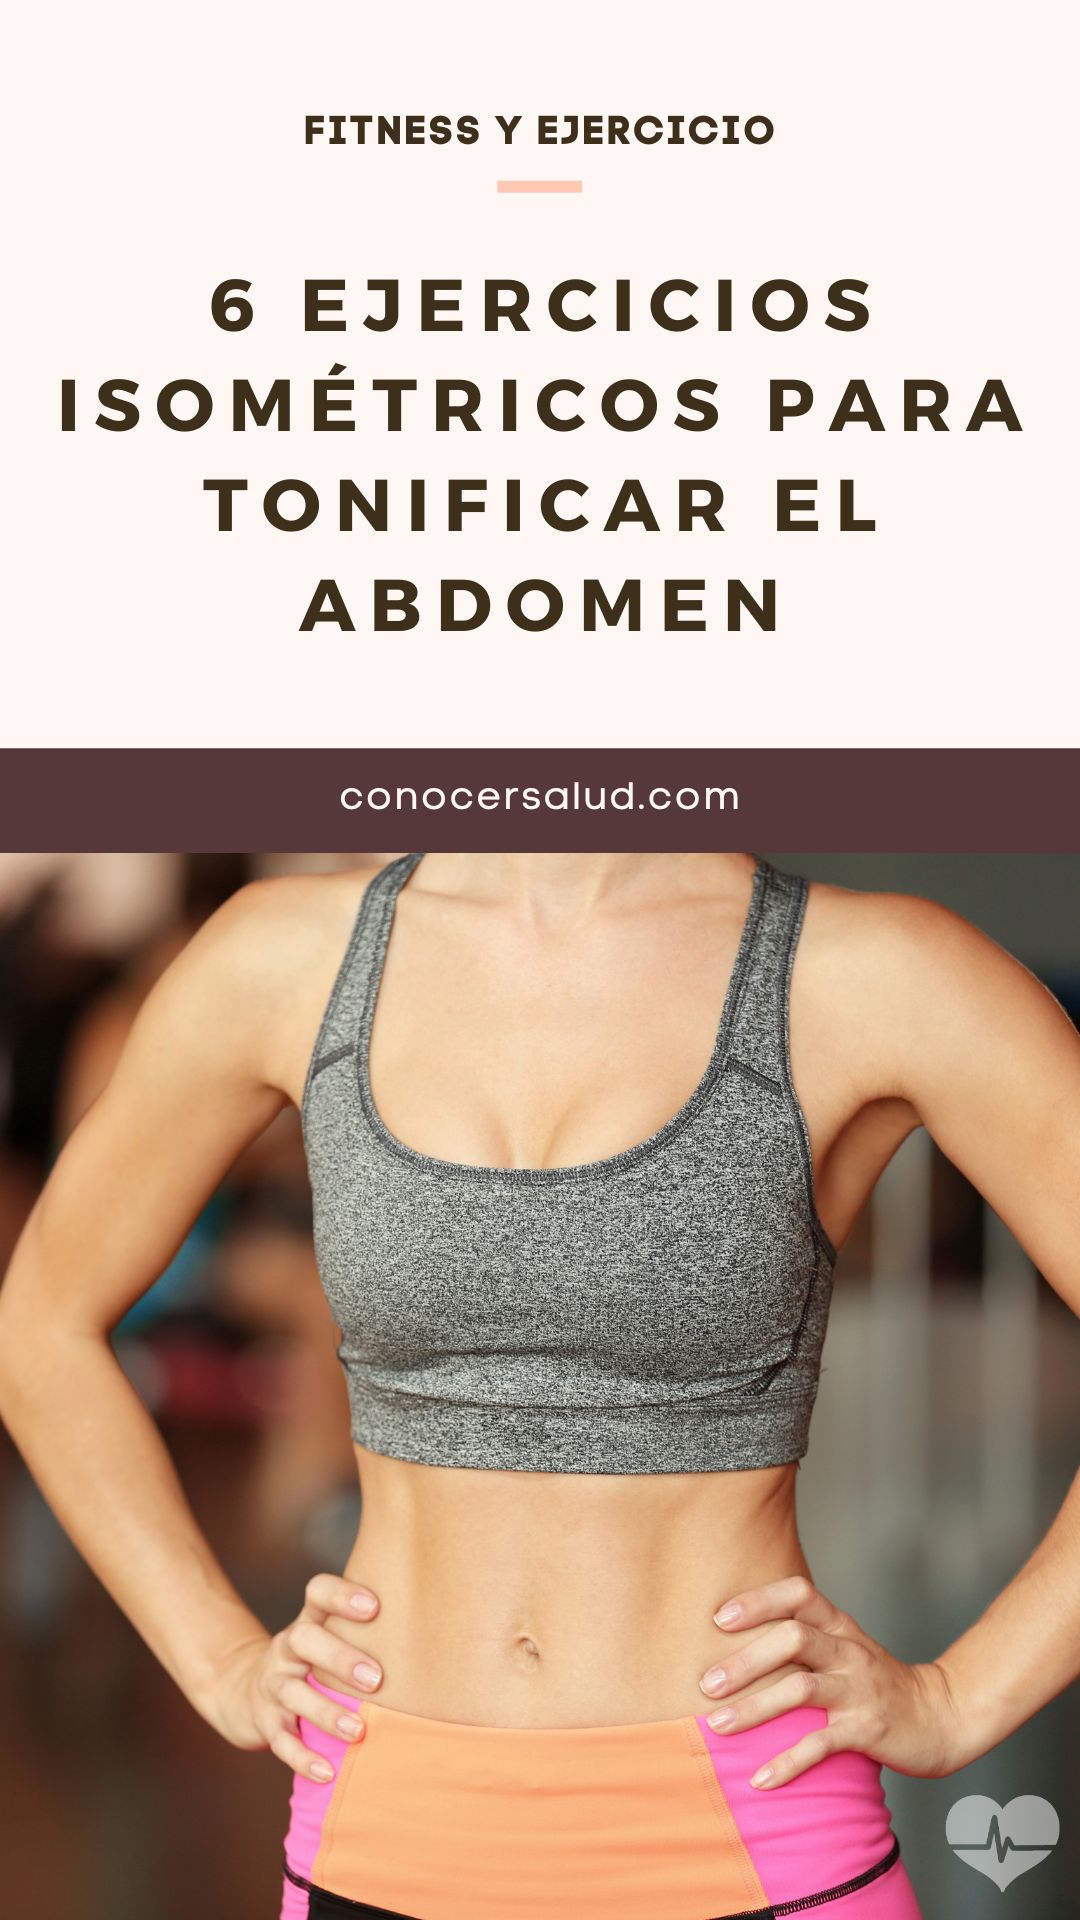 6 ejercicios isométricos para tonificar el abdomen